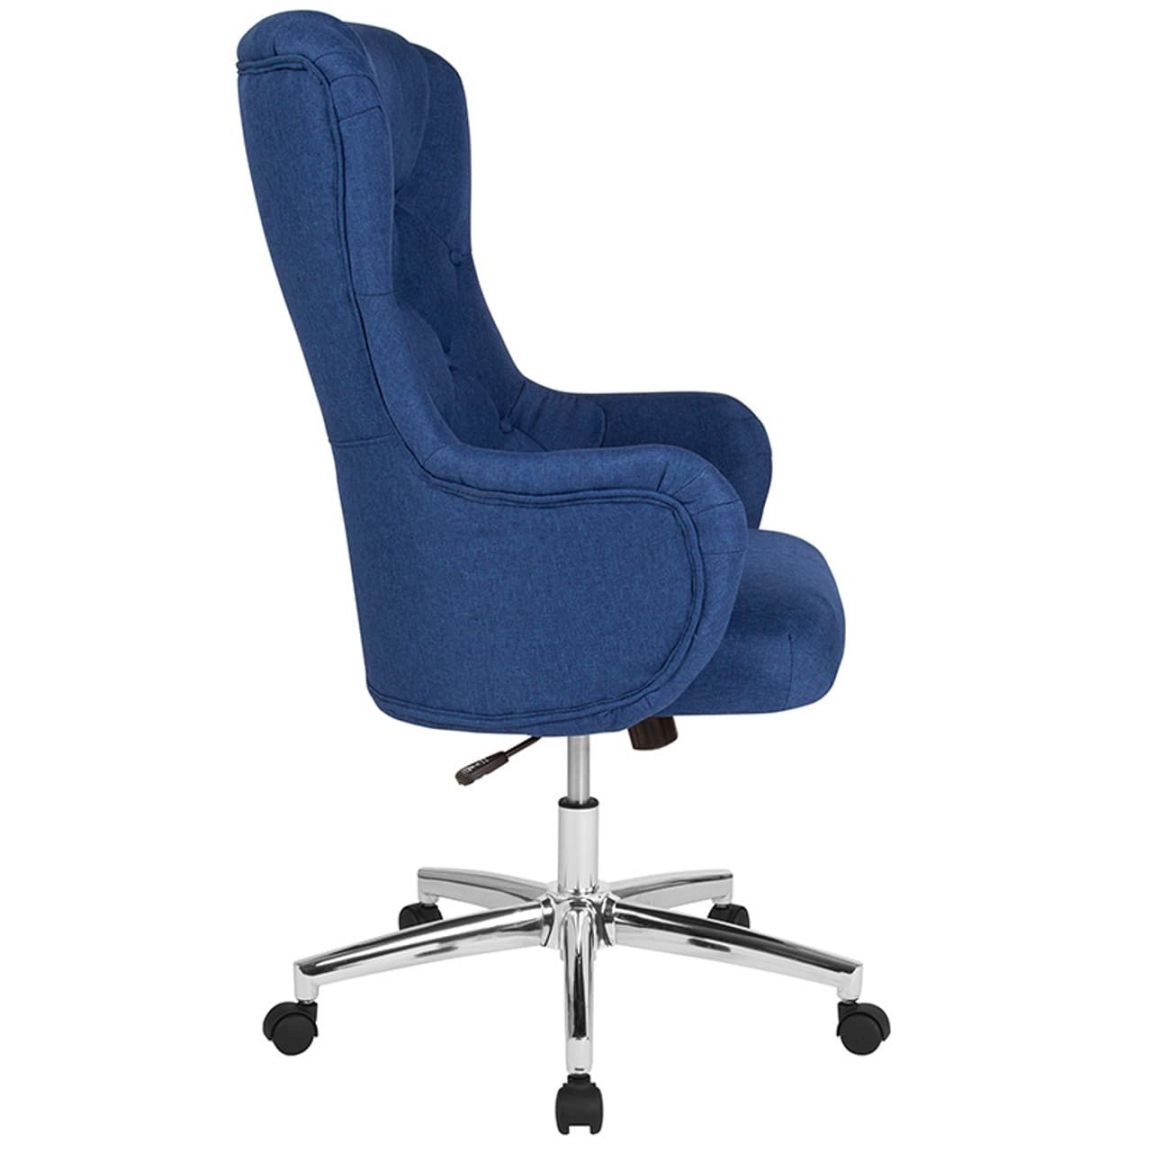 Ghế văn phòng màu xanh với phần lưng có chiều cao lớn hơn giúp người dùng có sự thuận tiện